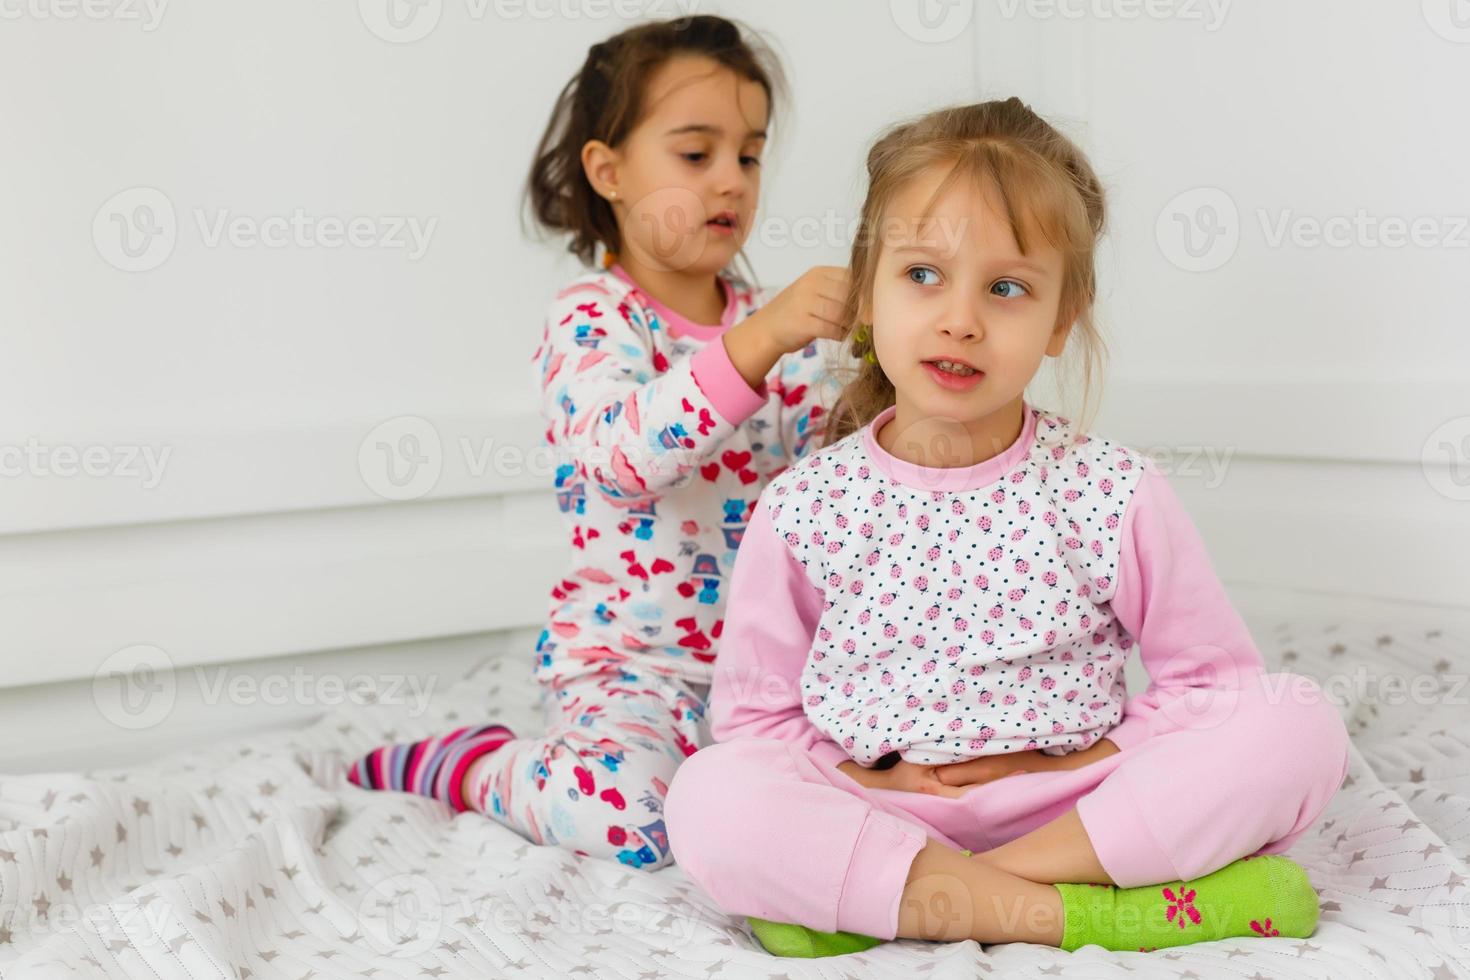 festa do pijama e amizade. festa do pijama de duas crianças pequenas felizes no quarto. amizade de crianças pequenas meninas com rostos felizes. sim. foto